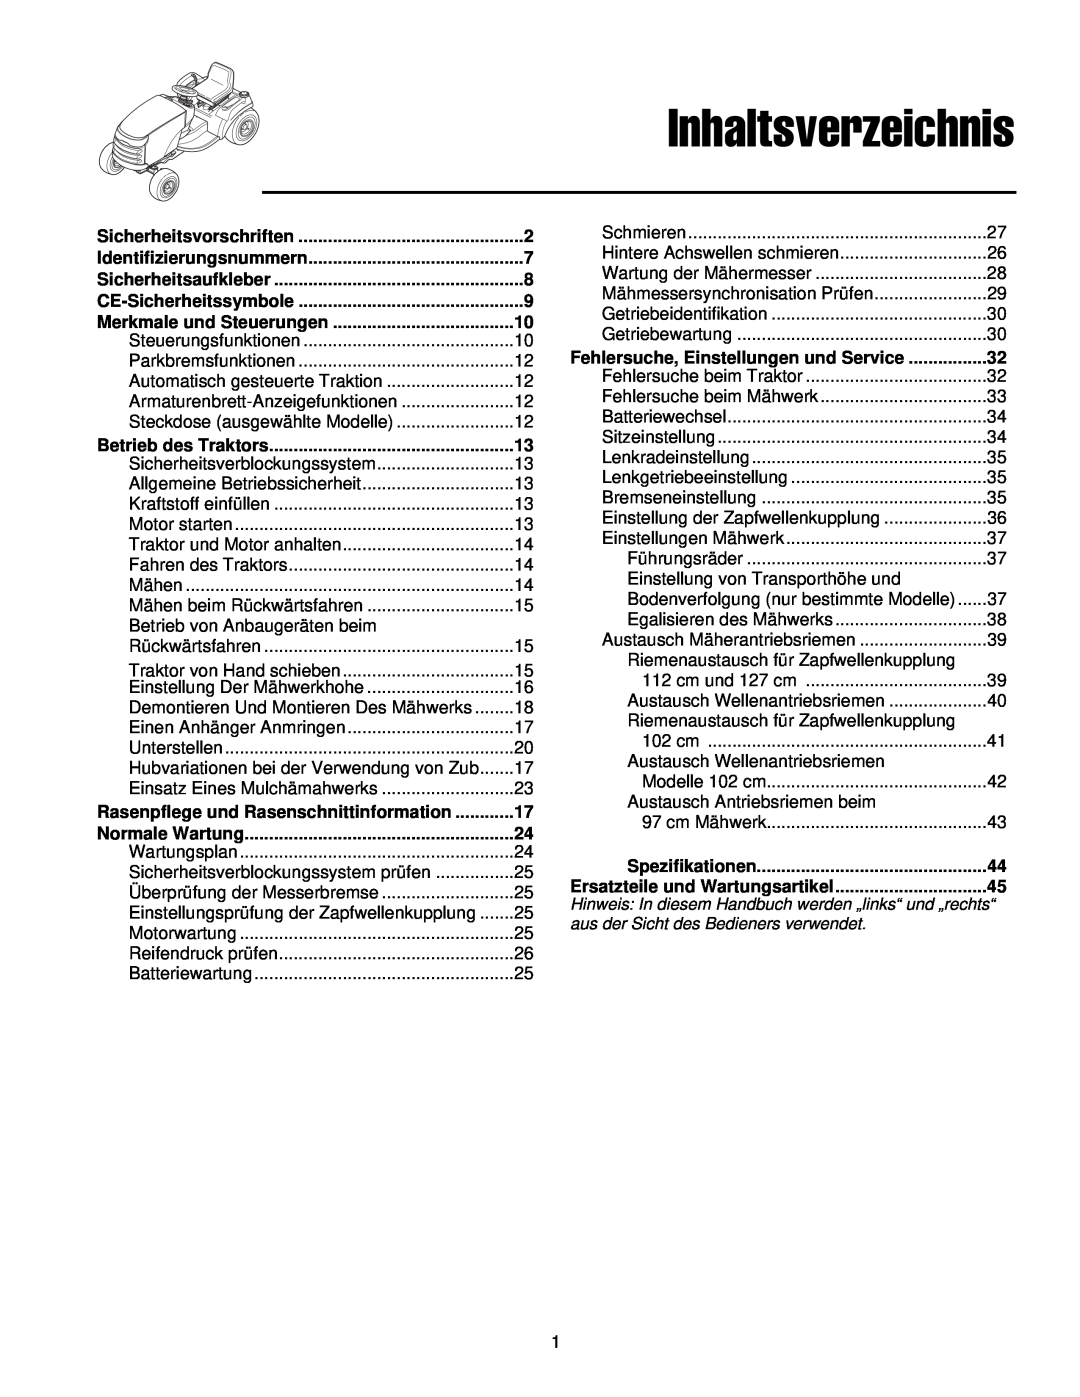 Simplicity 300 manual Inhaltsverzeichnis, Spezifikationen 